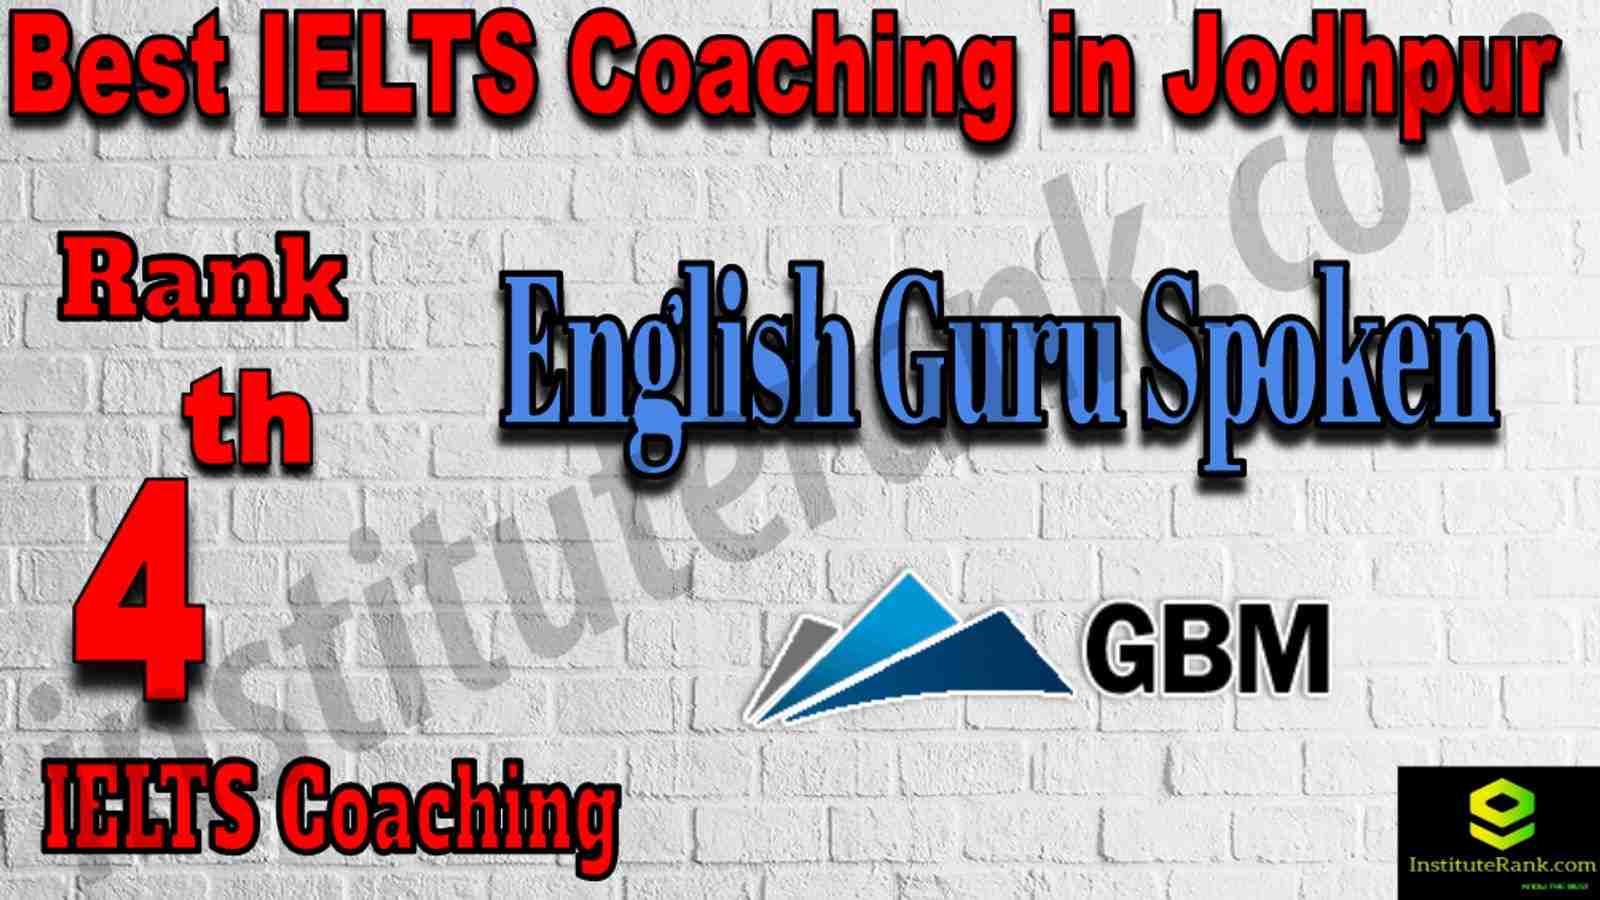 4th Best IELTS Coaching in Jodhpur